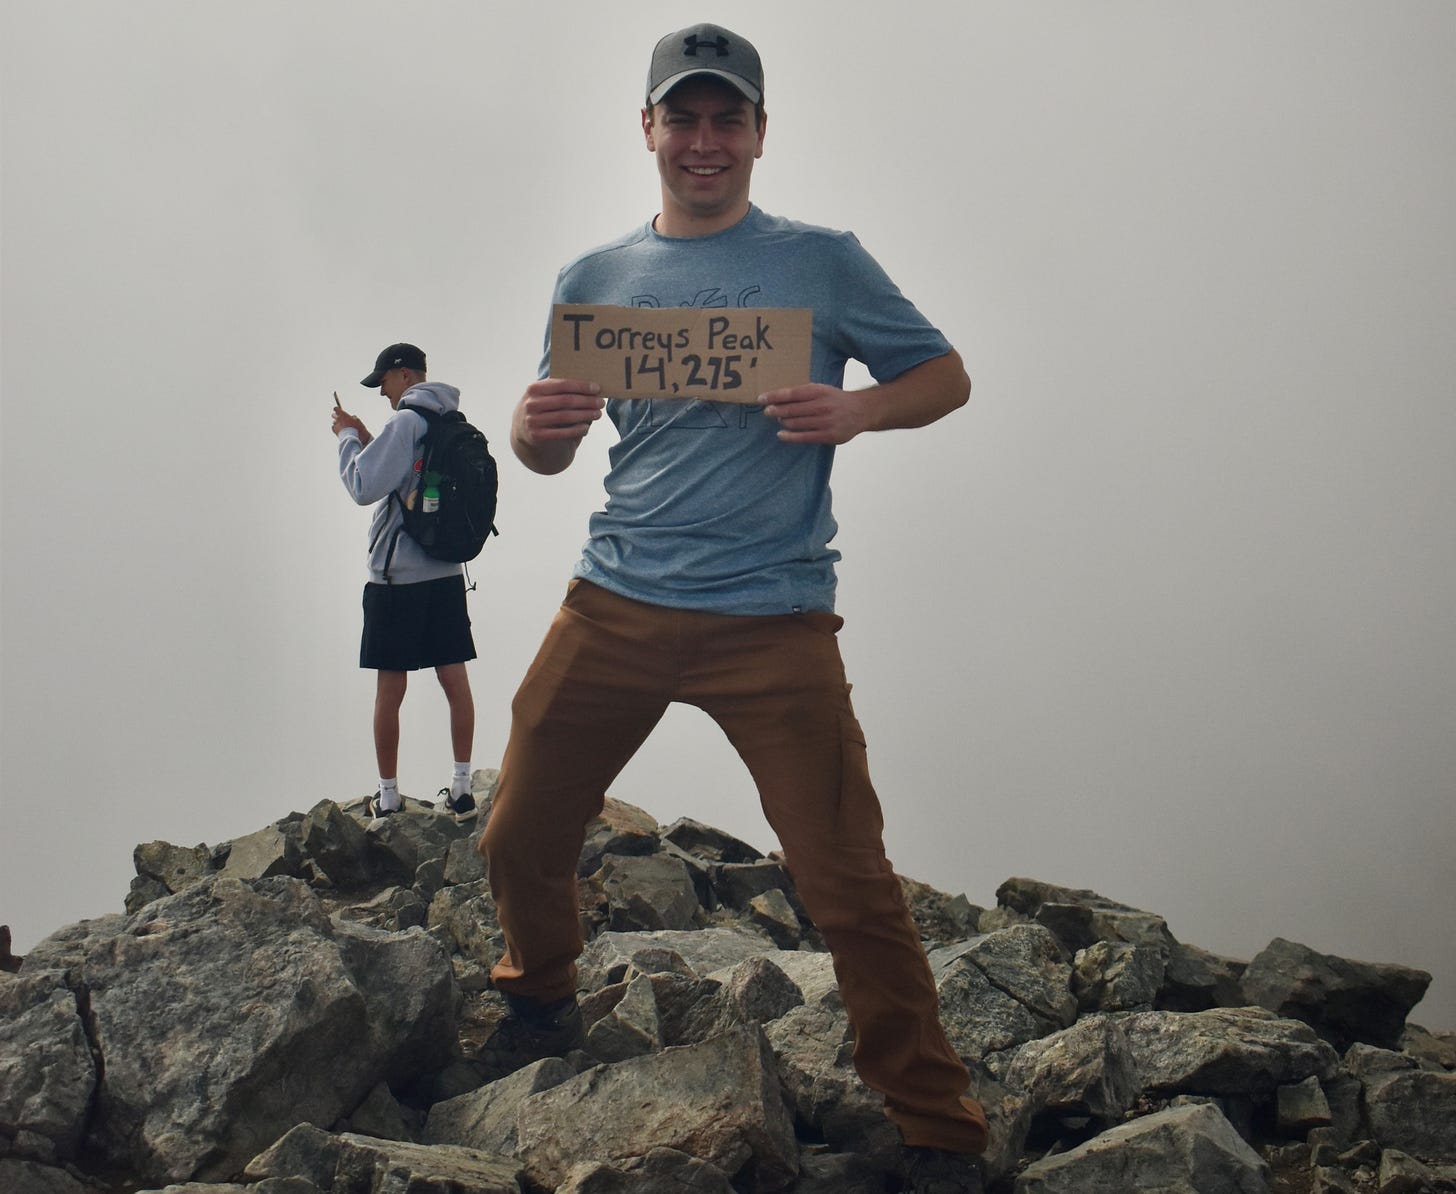 me, standing atop Torreys peak. The sky behind me is foggy.